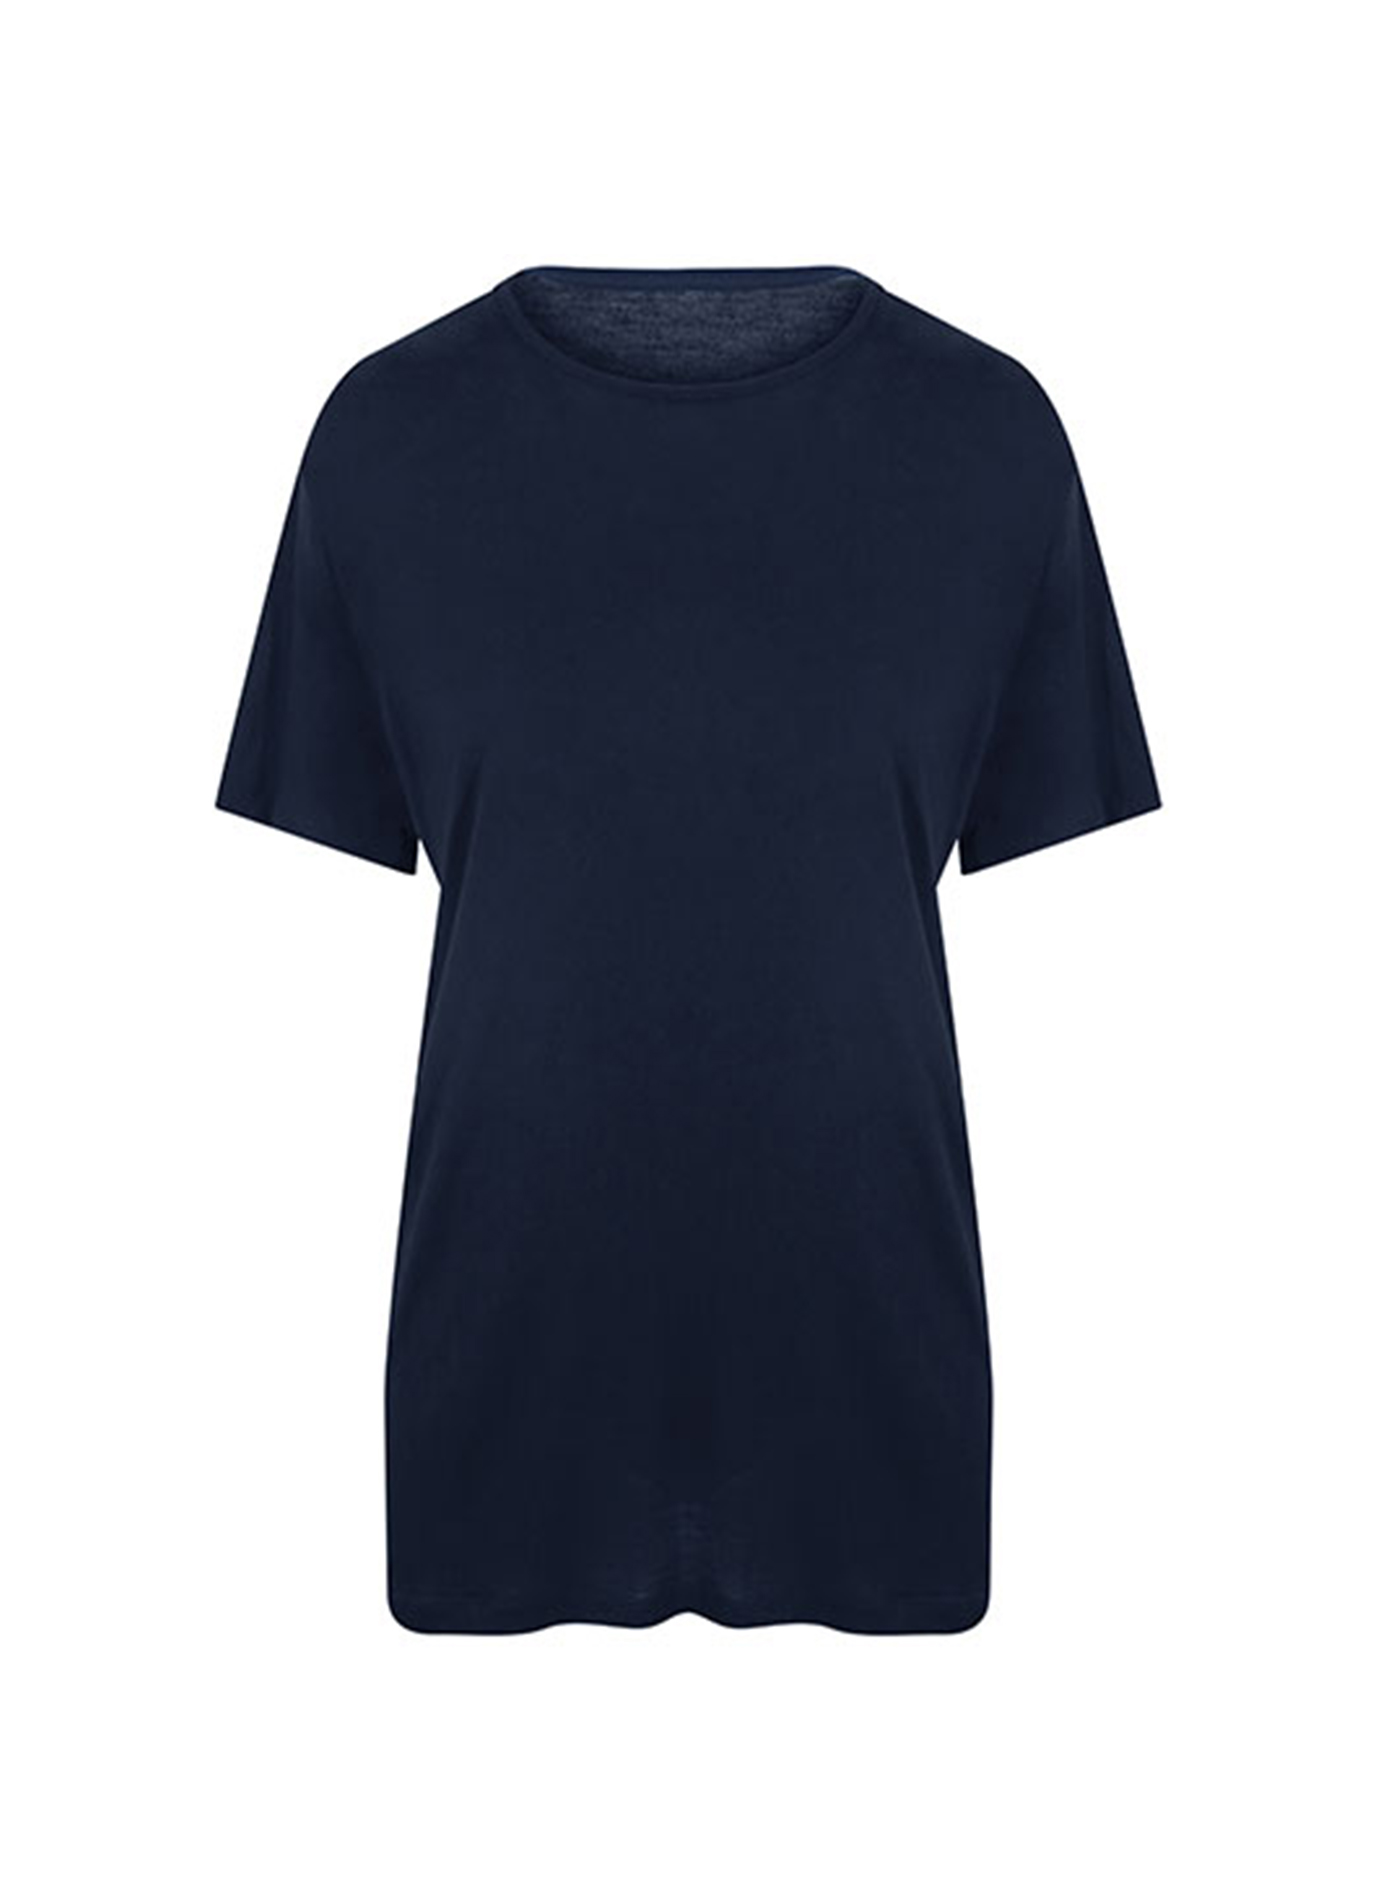 Pánské tričko Ecologie DainTree EcoViscose - Námořní modrá XL